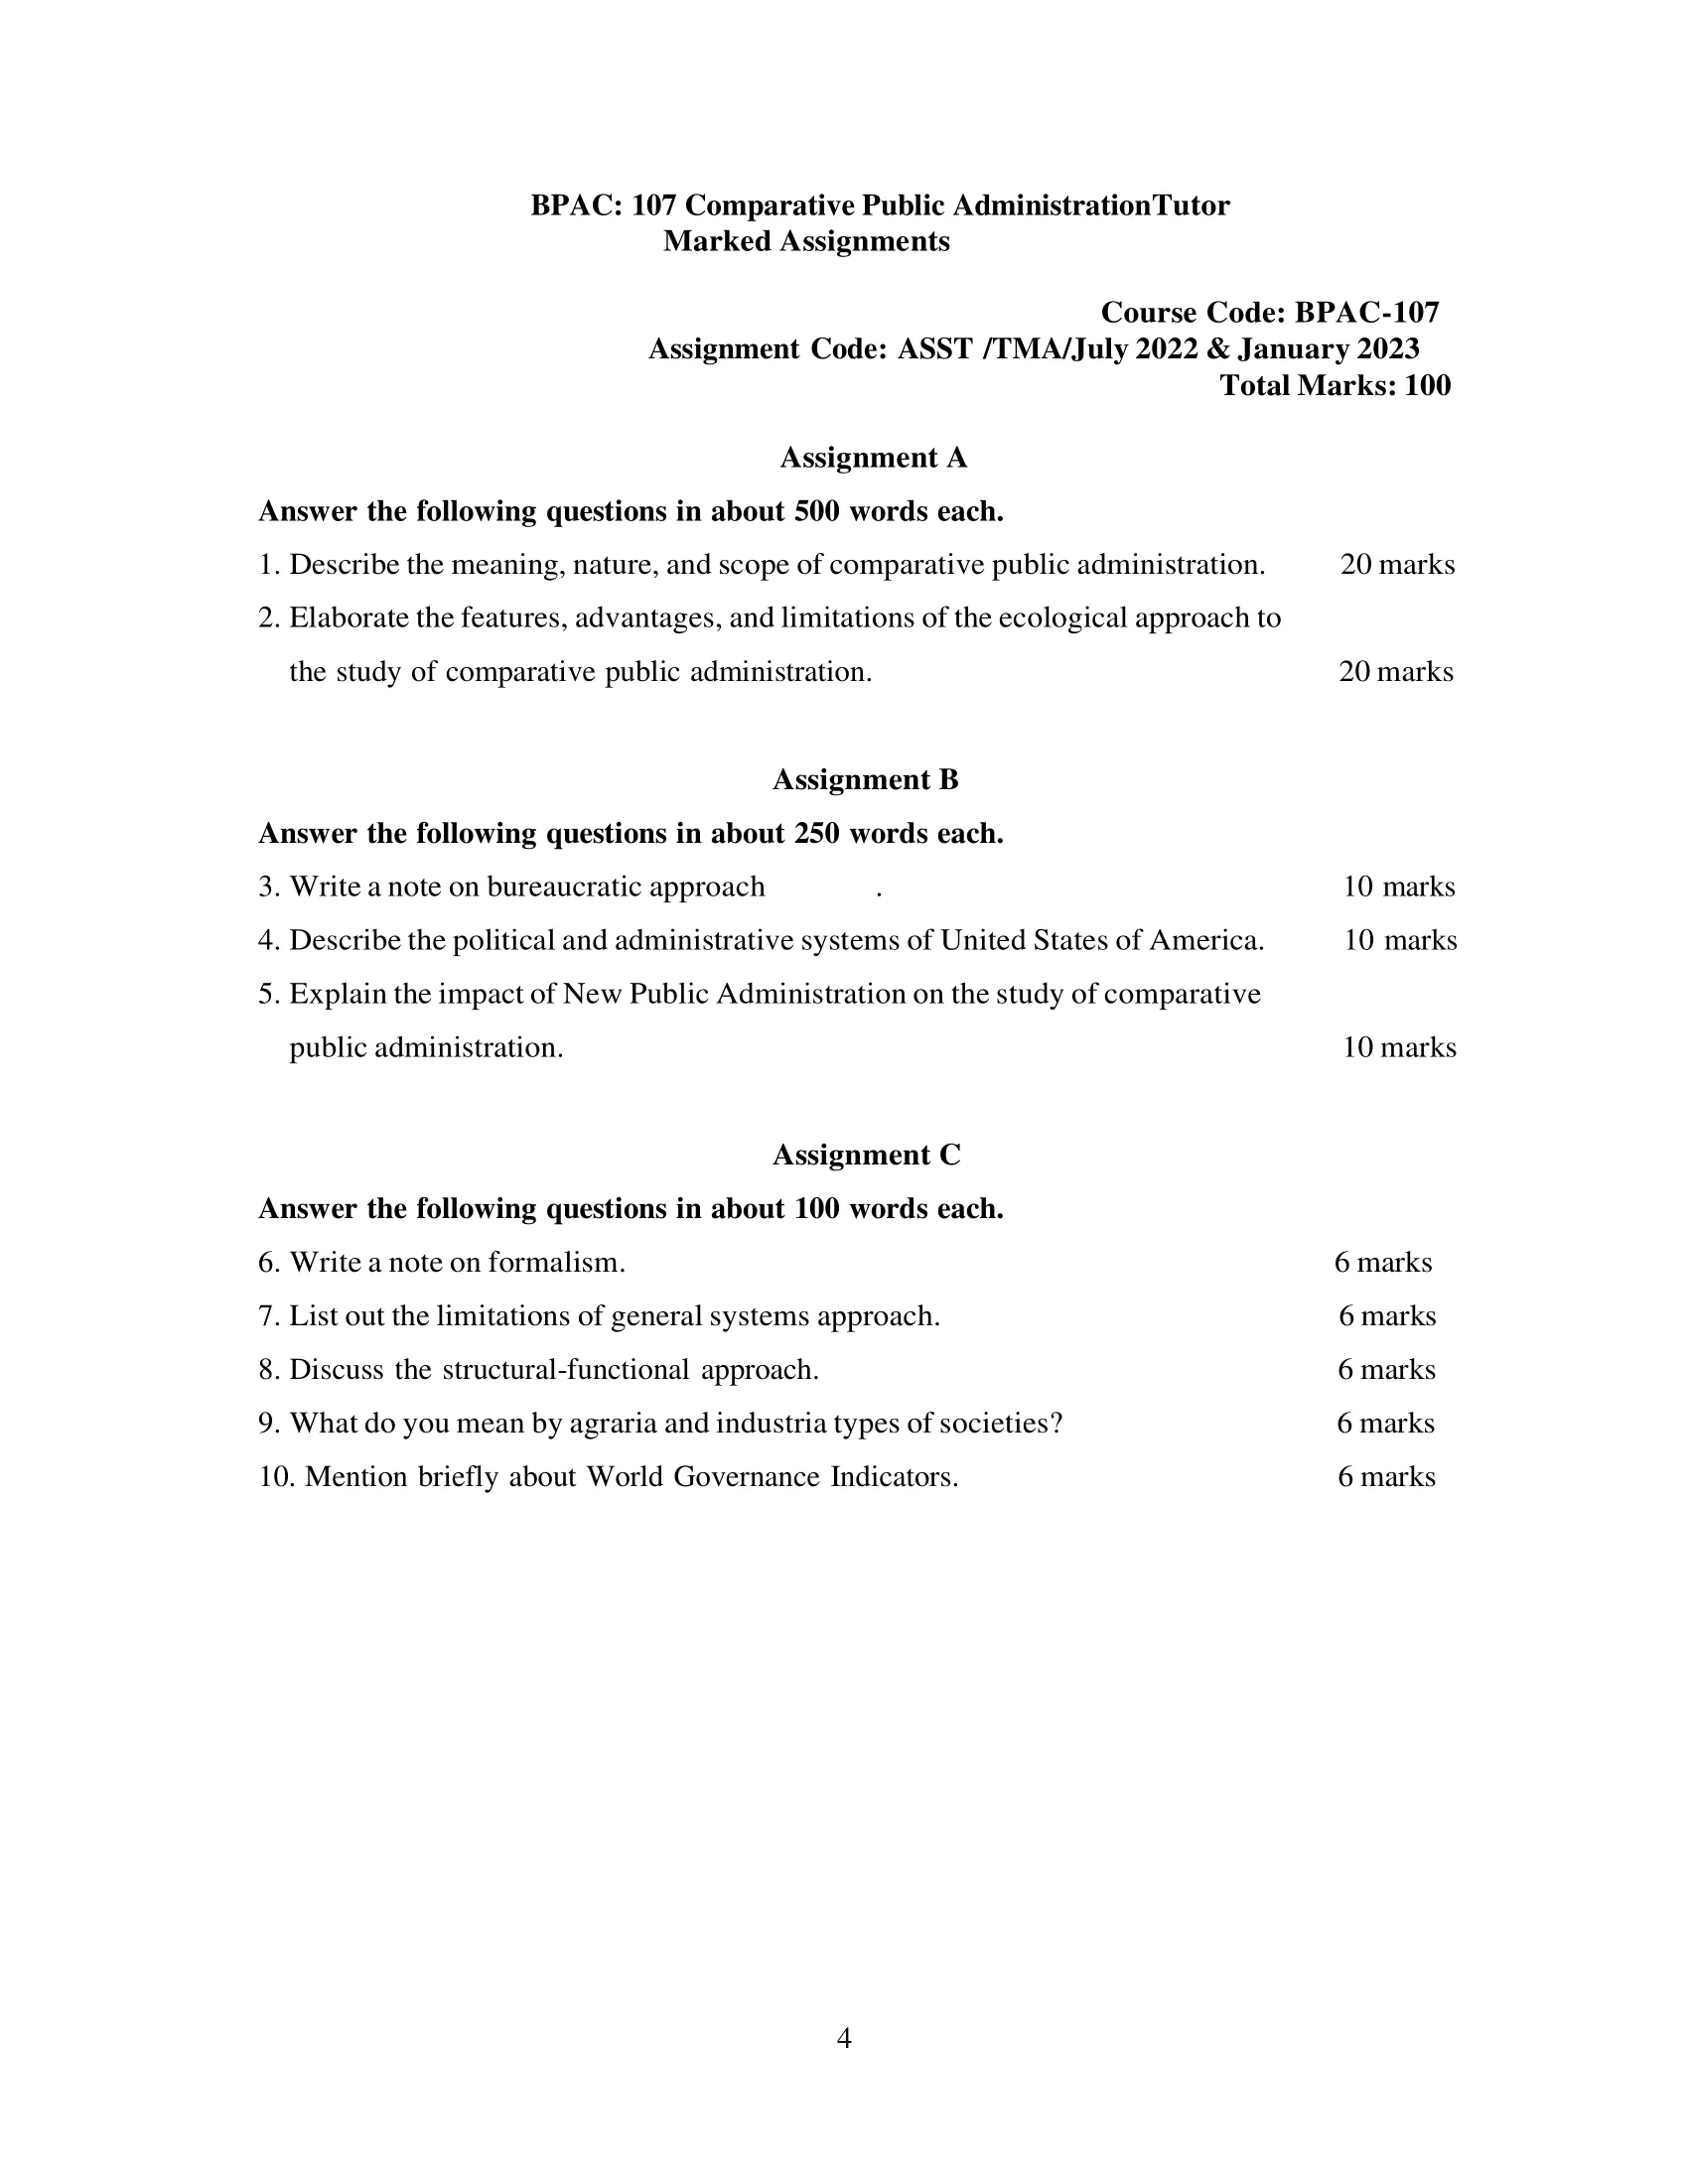 BPAC-107 IGNOU BAG Solved Assignment-Comparative Public AdministrationTutor